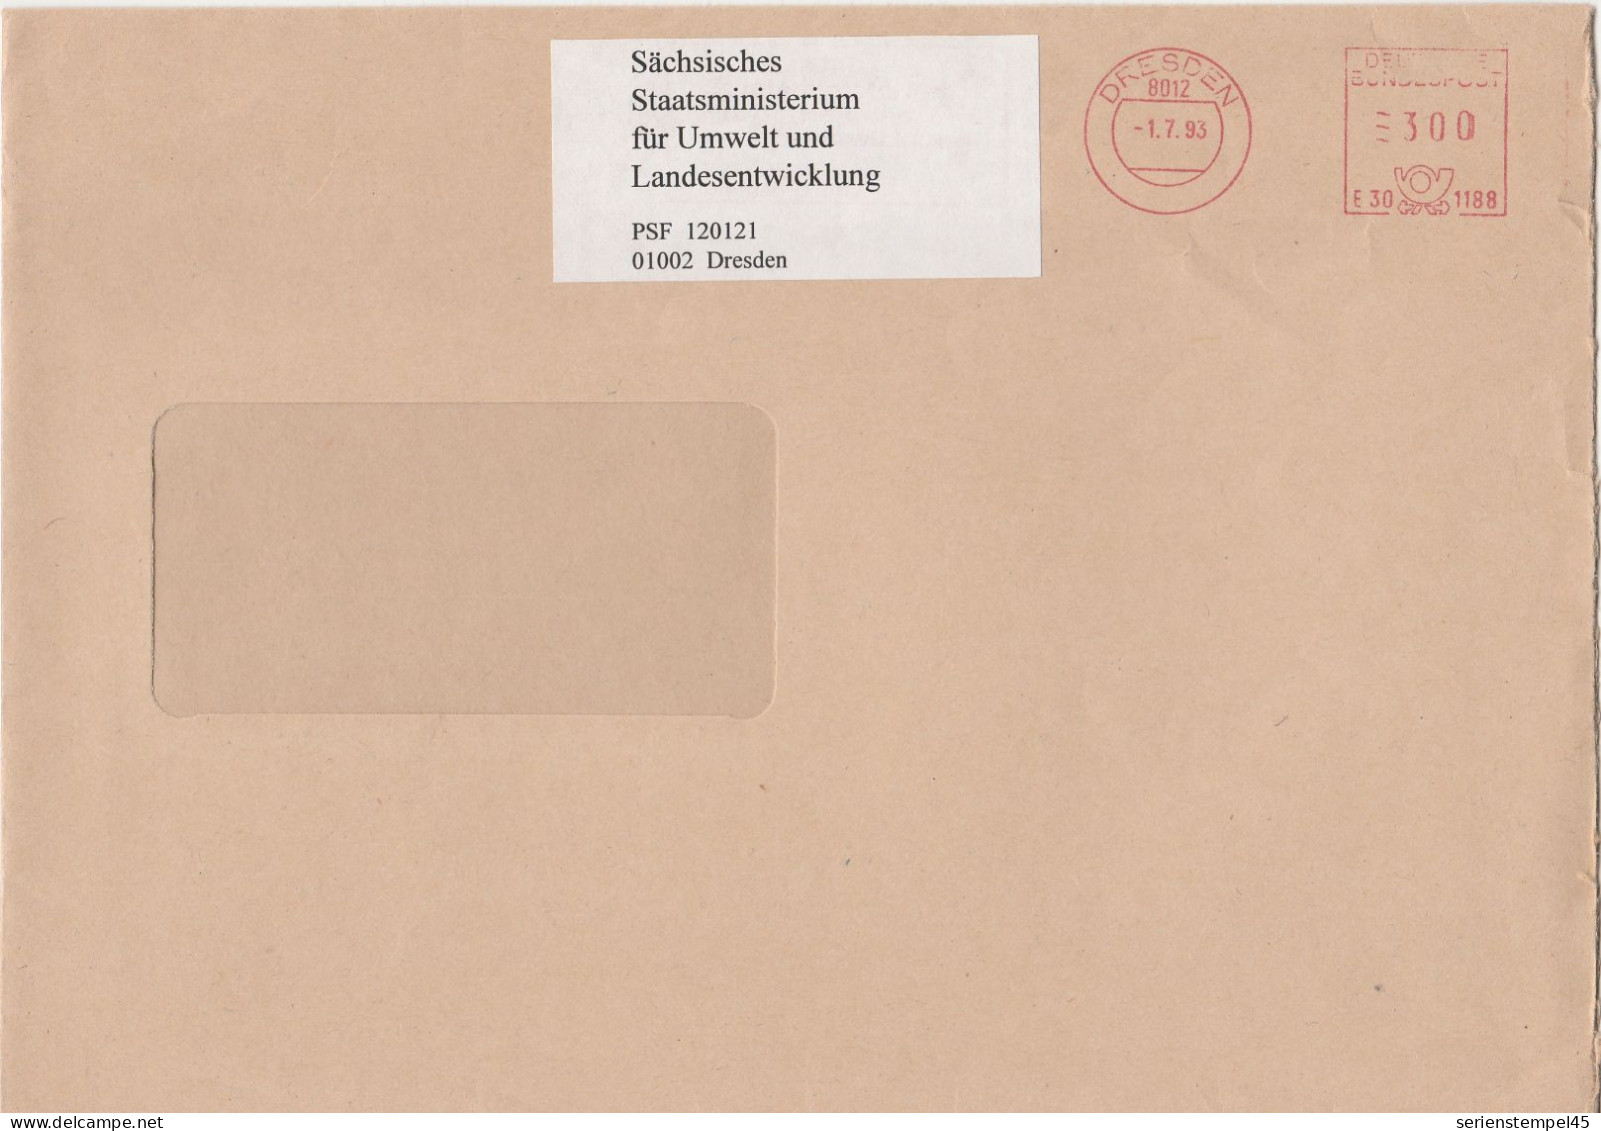 Deutsche Bundespost Brief Mit Freistempel VGO PLZ Oben Dresden 1993 Sächsisches Staatsministerium E30 1188 Mit Überklebe - Machines à Affranchir (EMA)